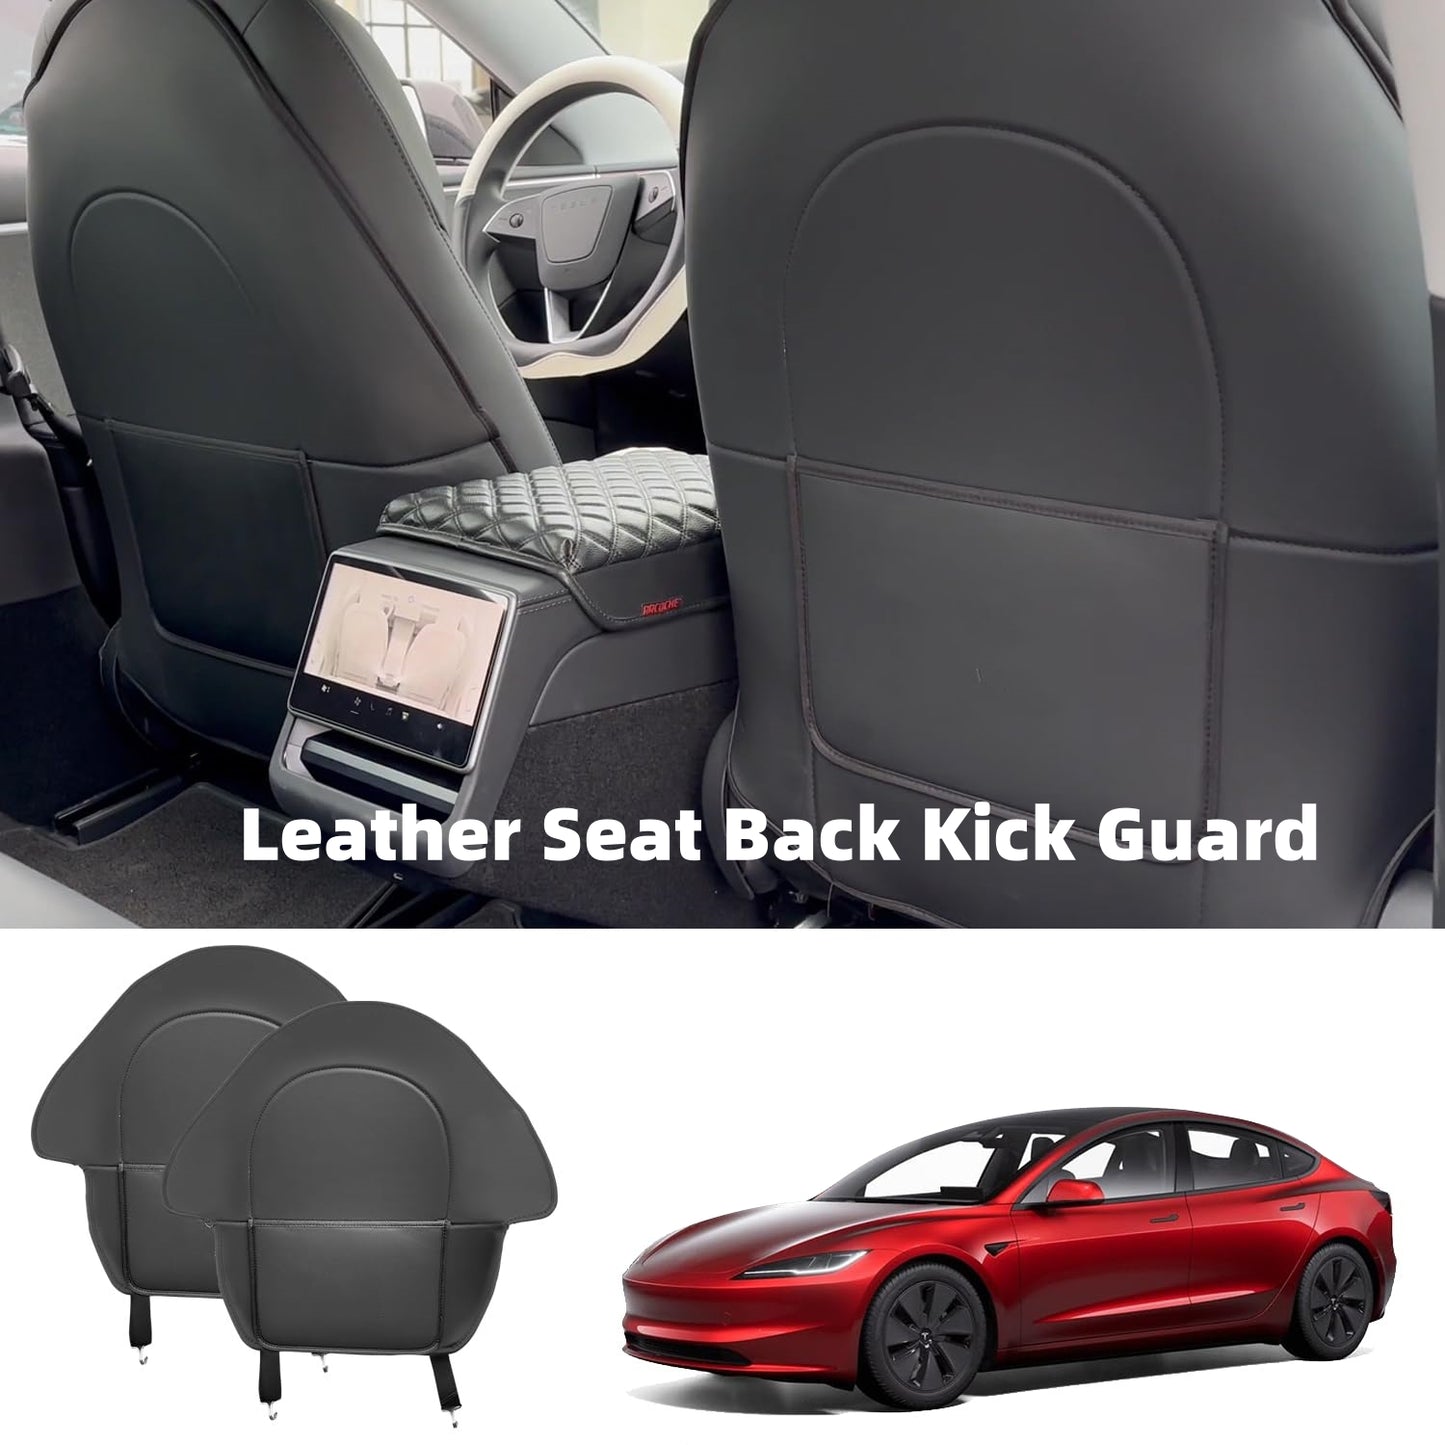 Leather Seat Back Kick Guard for Tesla Model 3 highland/3/Y - Set